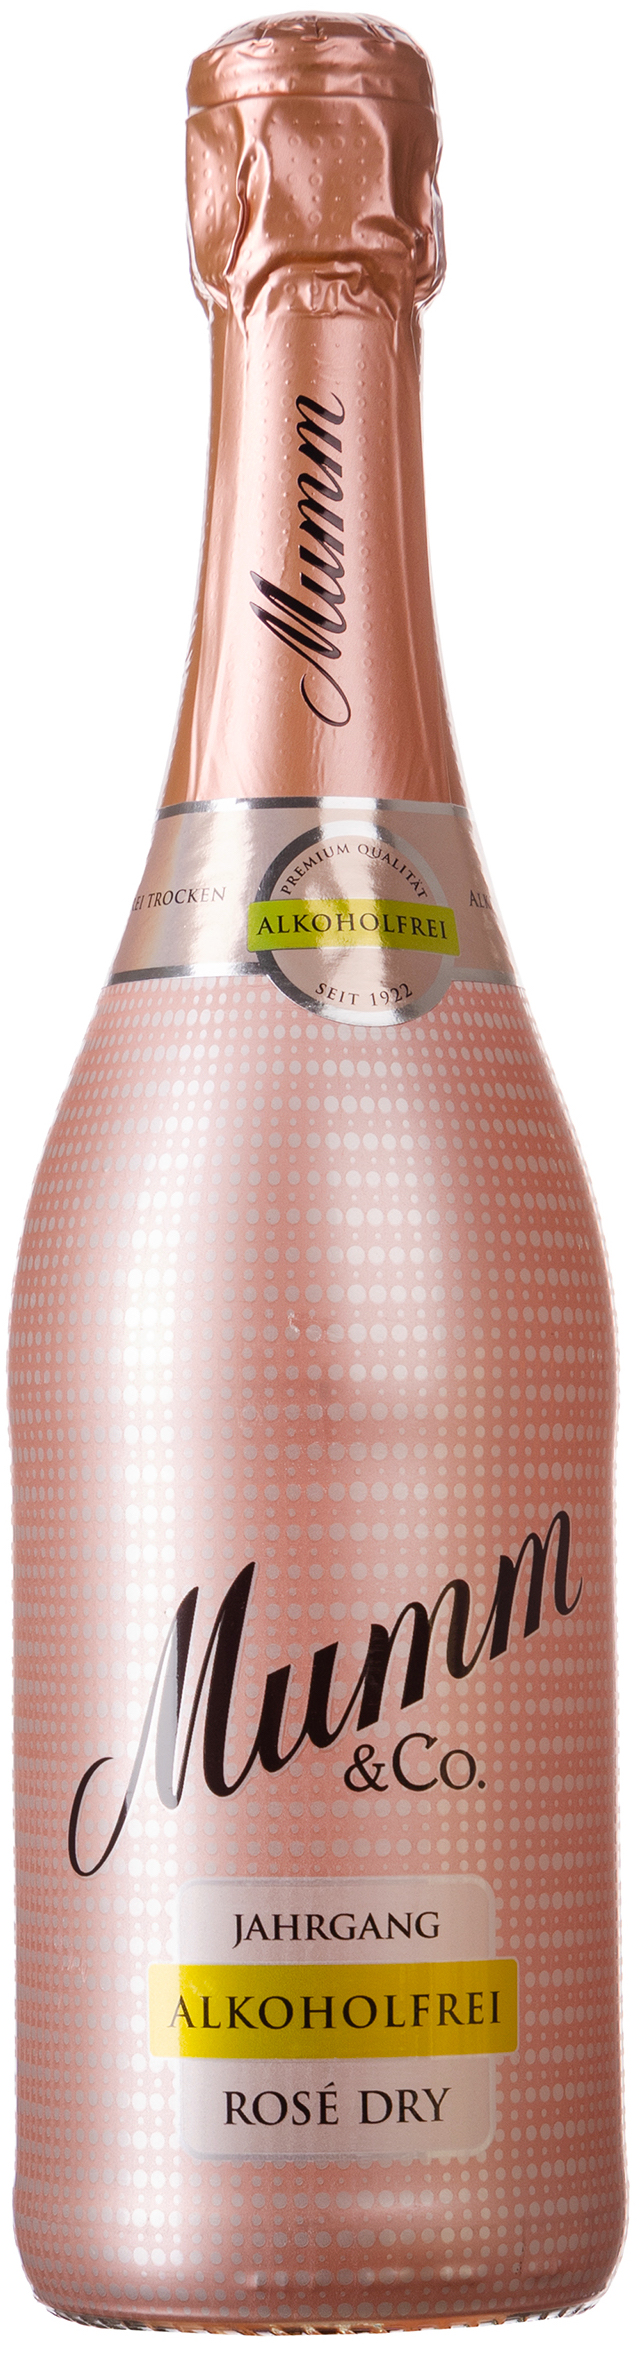 Mumm & Co. Rosé Dry Alkoholfrei 0,0% vol. 0,75L | 721516 | Alkoholfreie Weine & Sekte